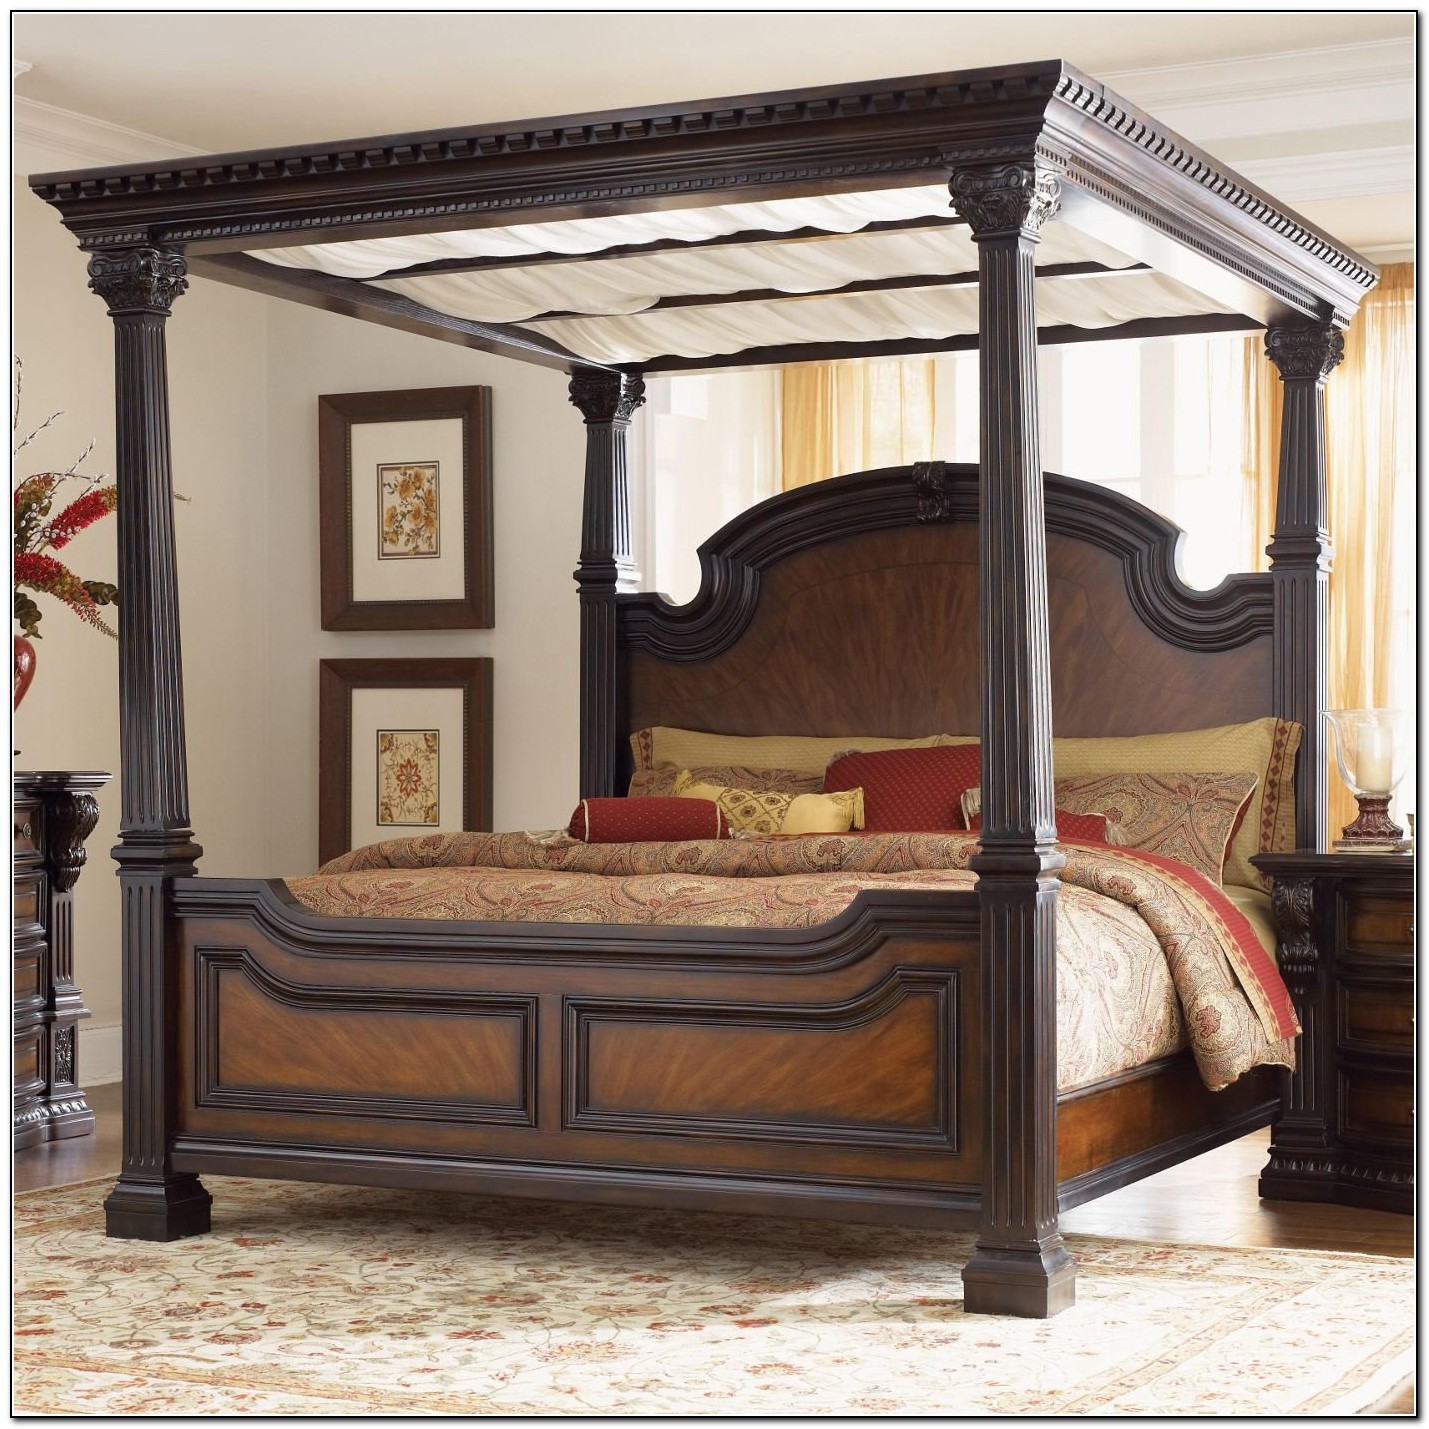 Target Bed Frames King - Beds : Home Design Ideas #R3nJllEQ2e7925